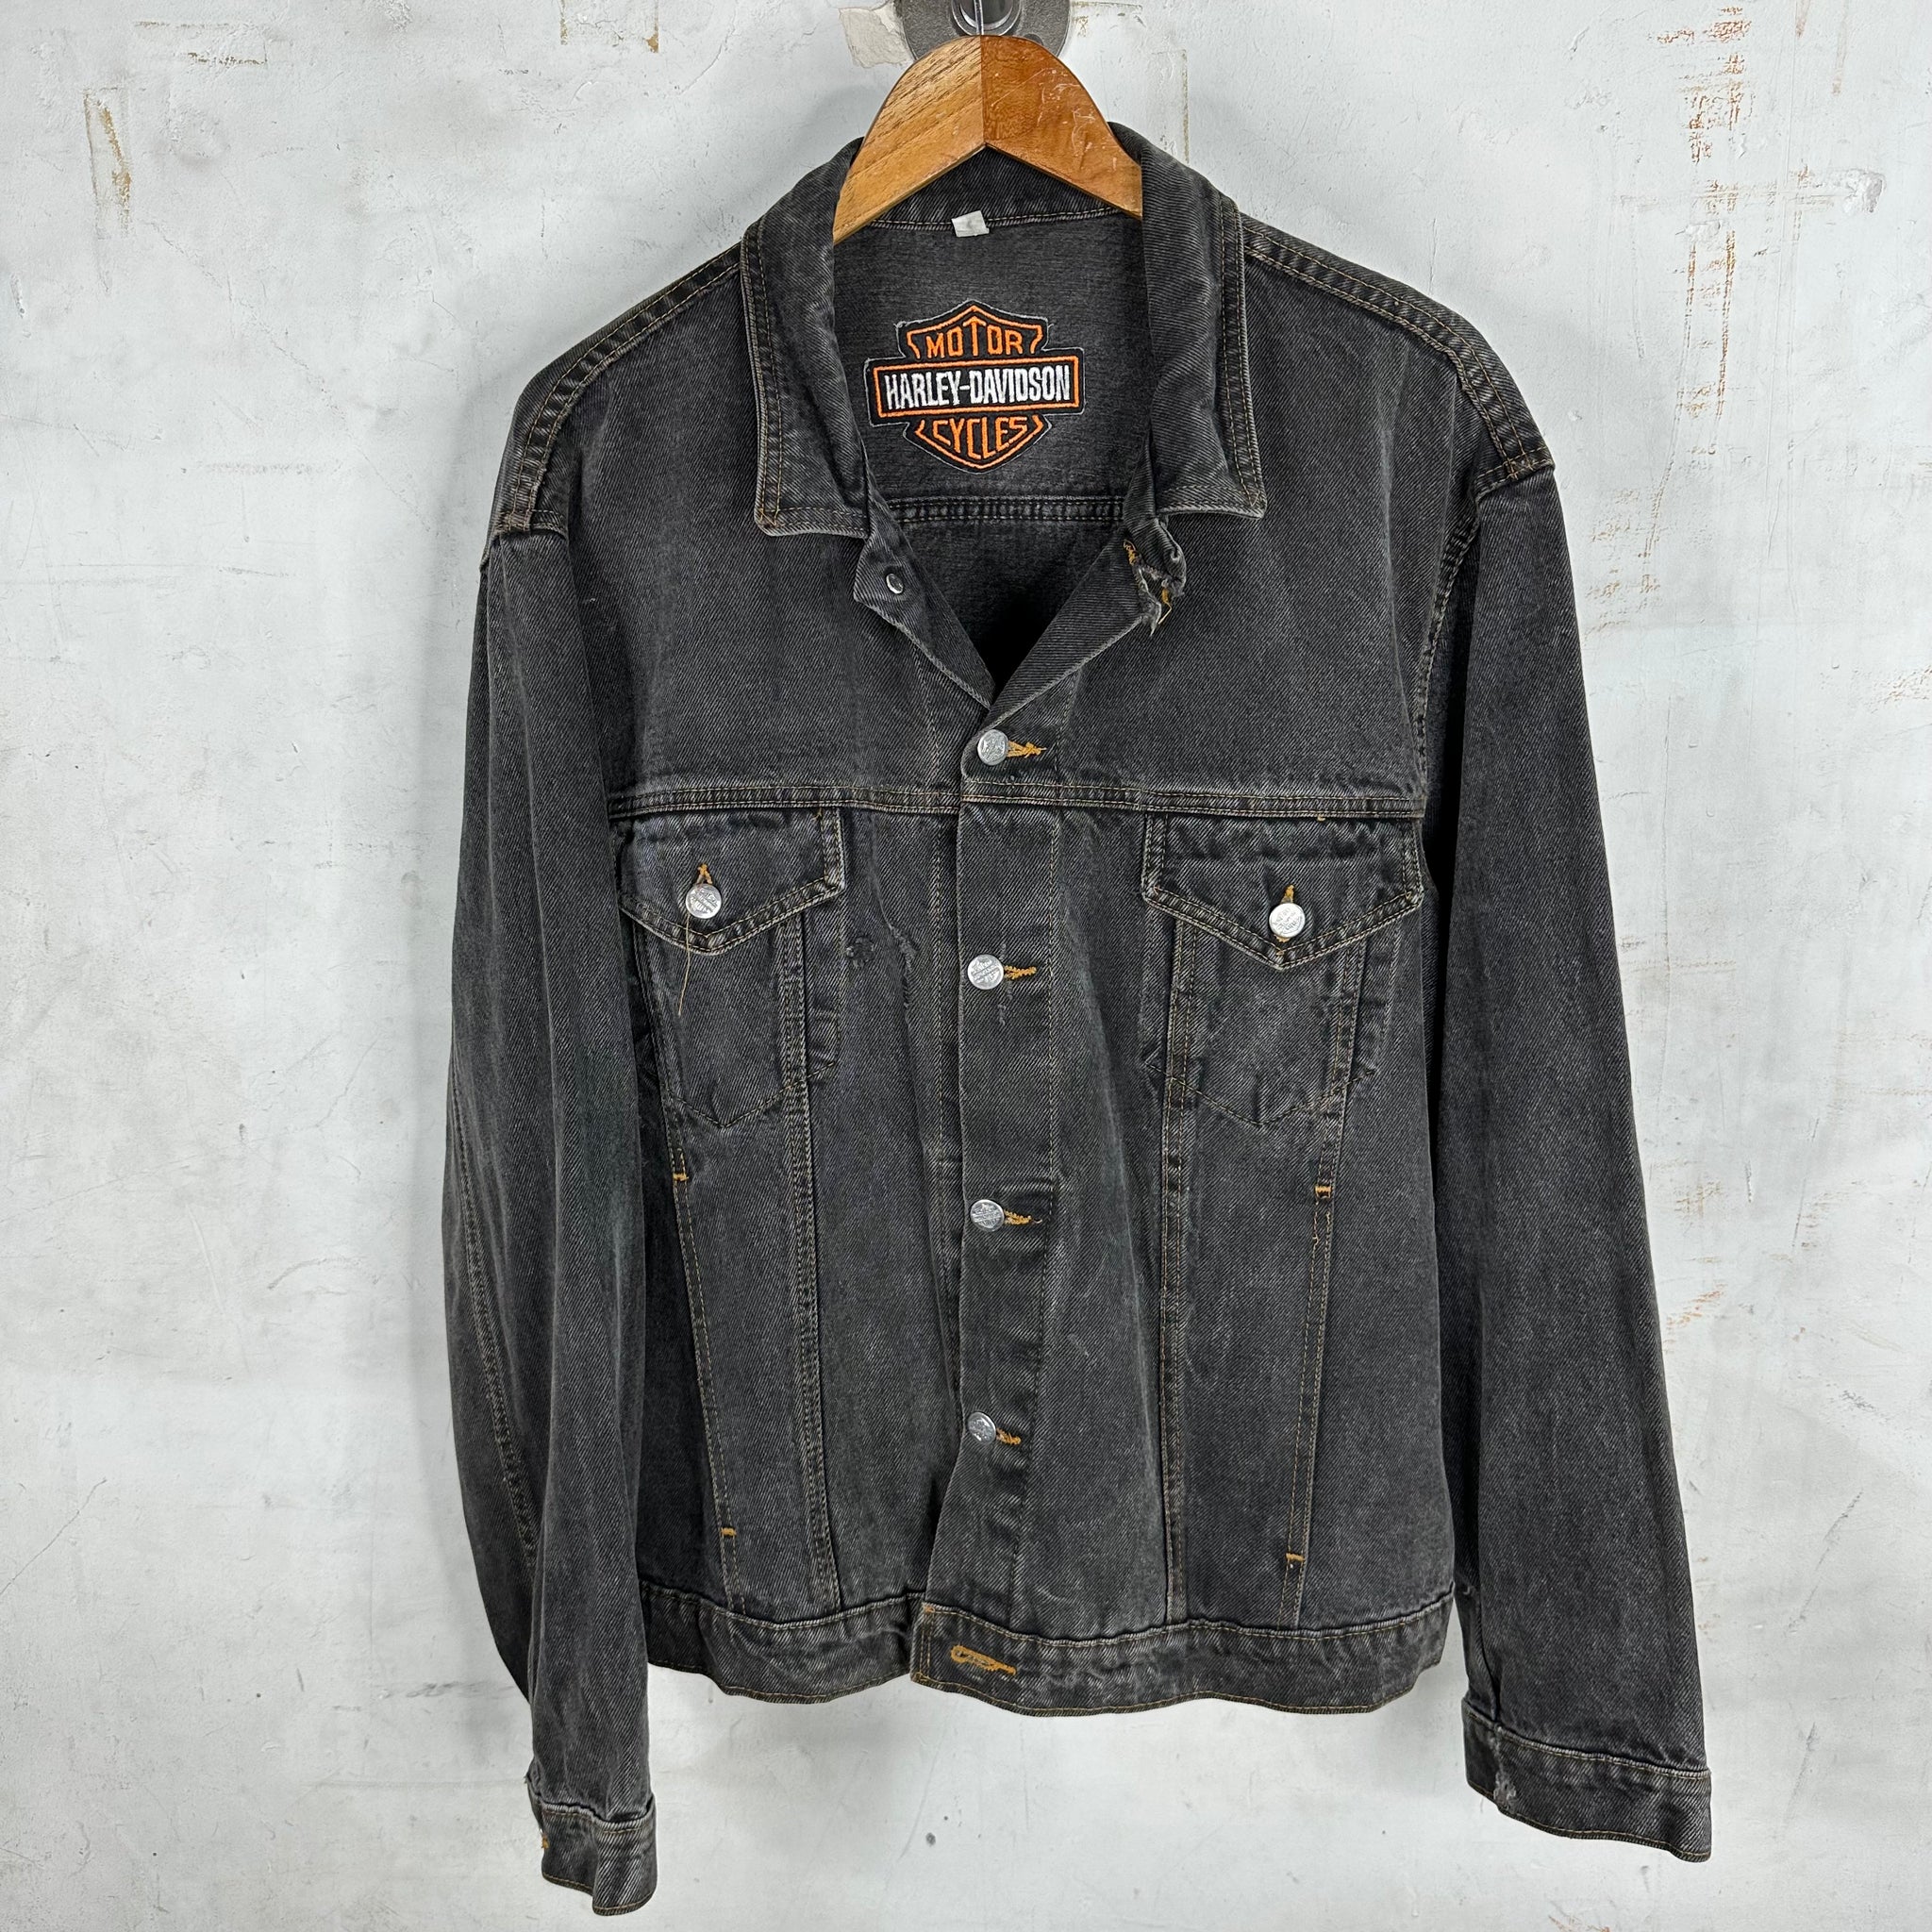 Vintage Harley Davidson Trucker Jacket